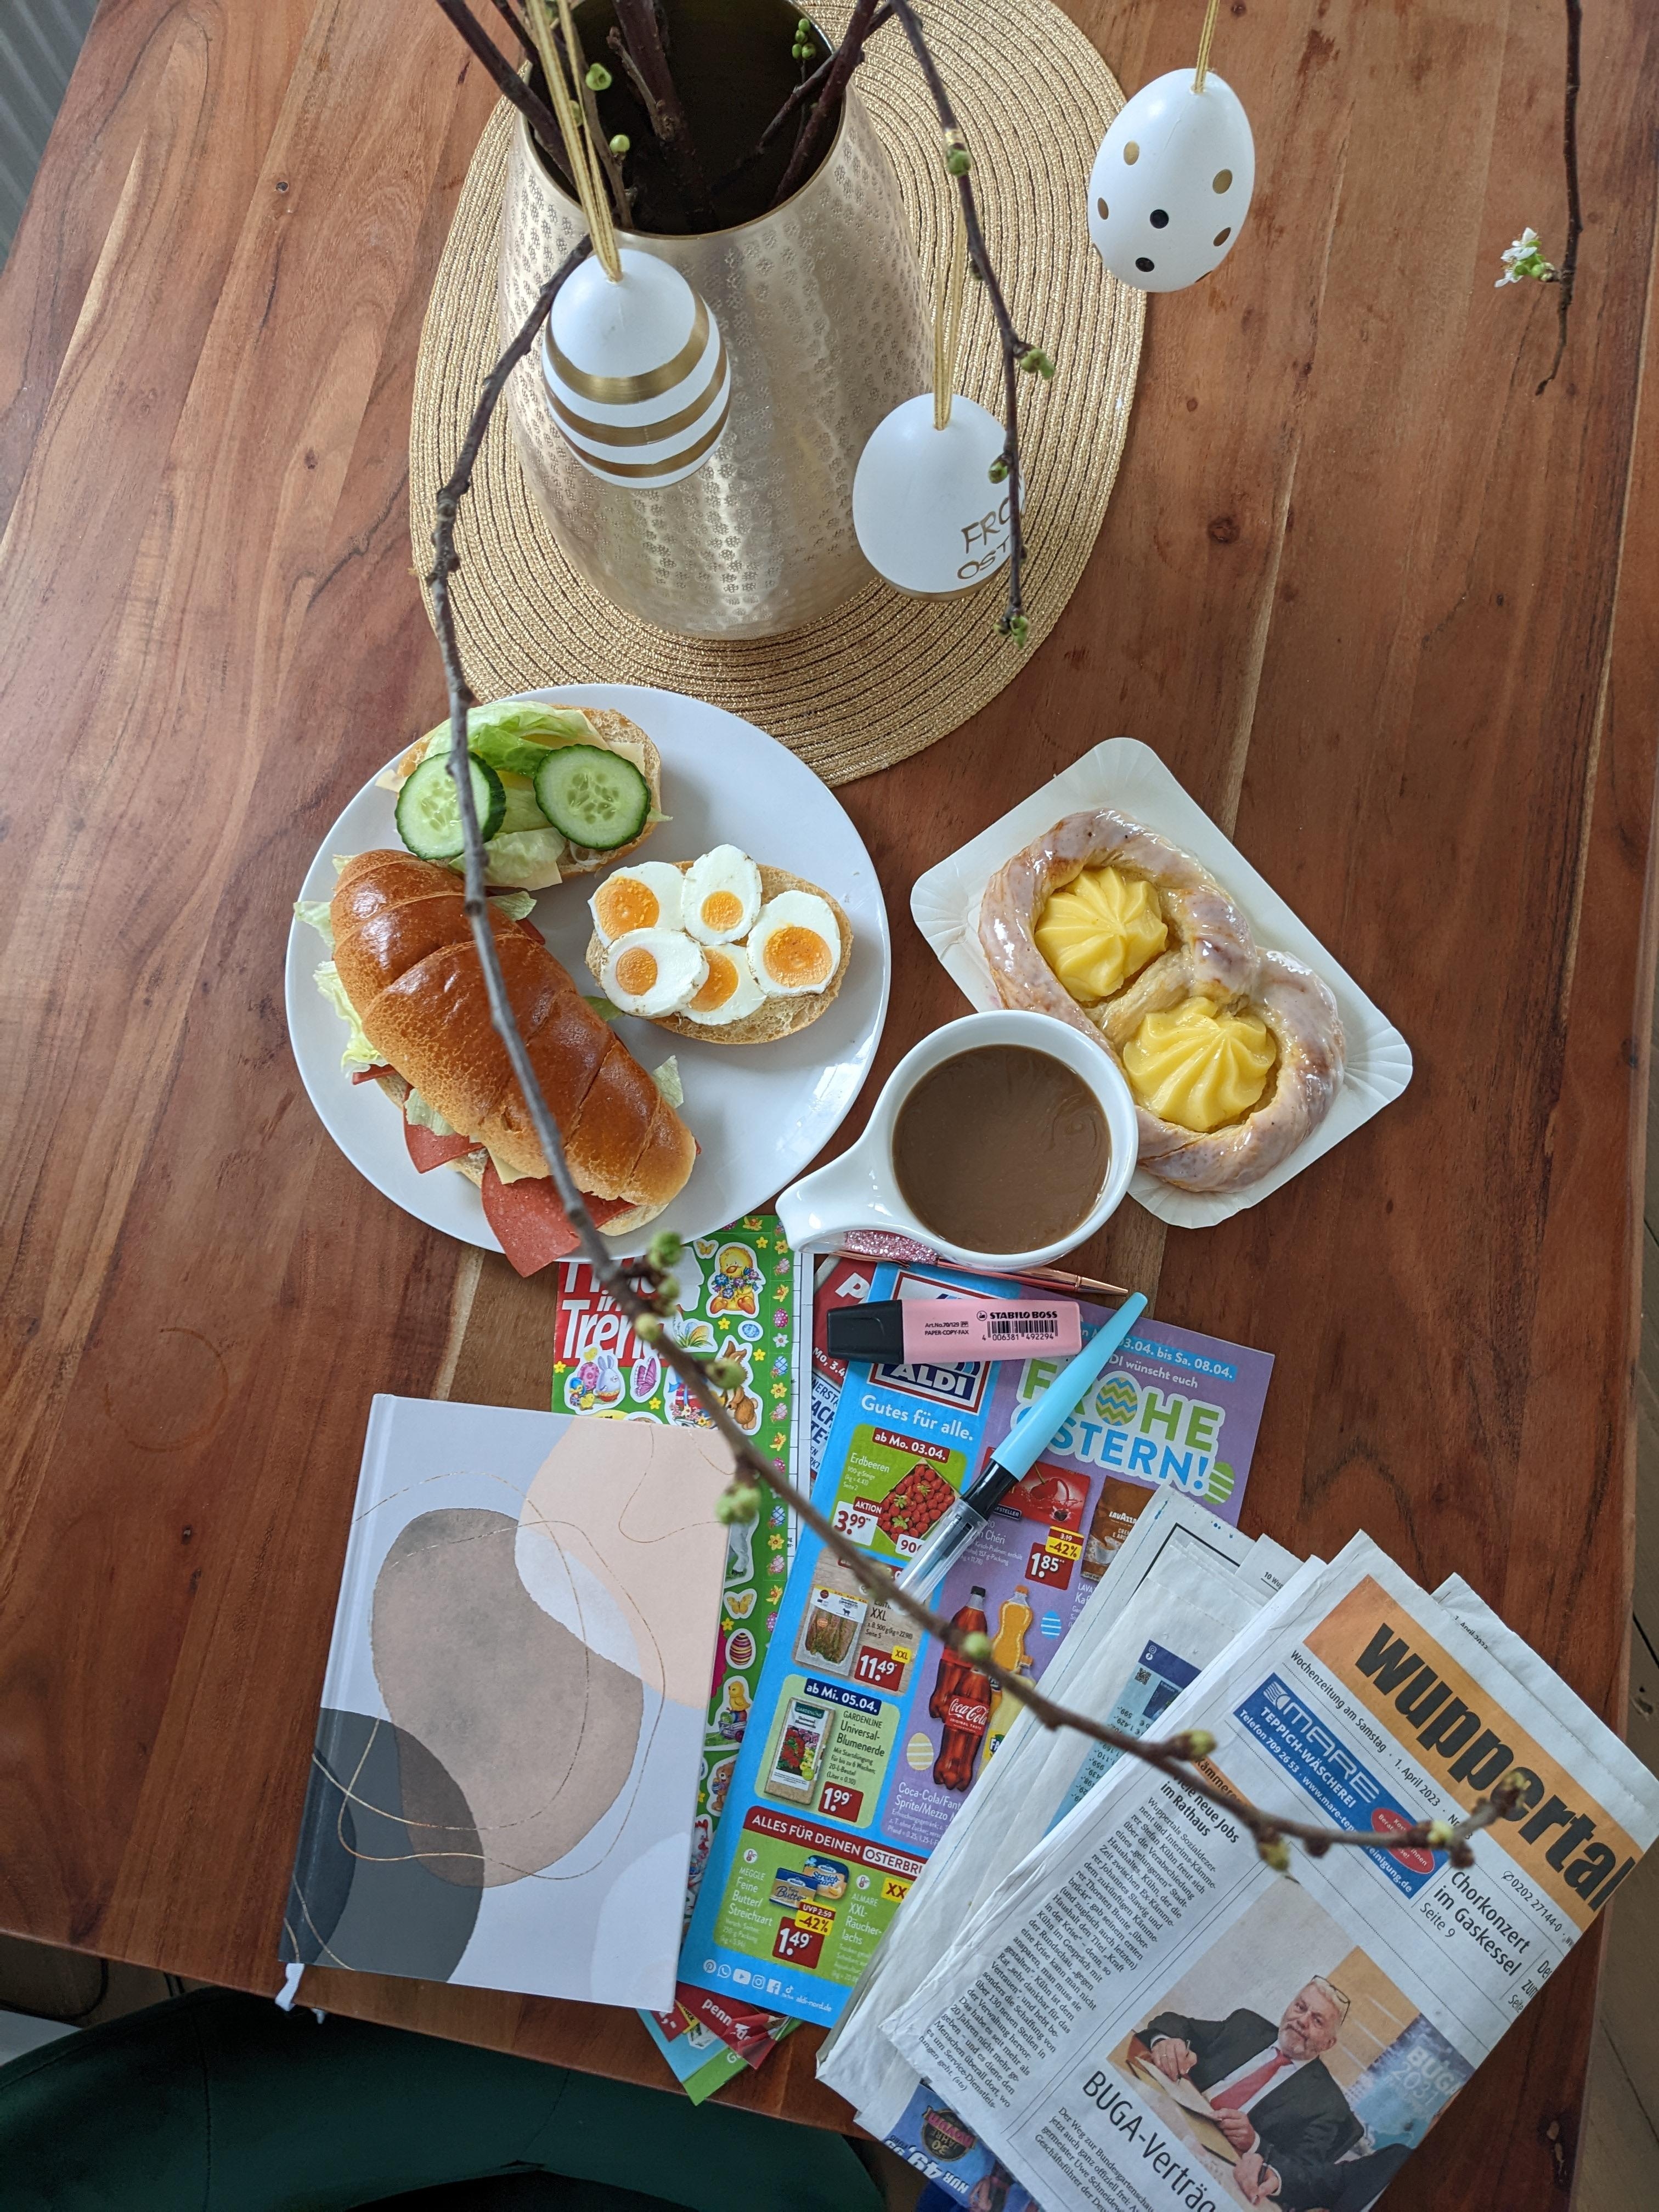 Sonntagsritual, Zeitung lesen, Angebote durchgehen. 
#frühstück #ostern #sonntag #essen #yummie #hobby